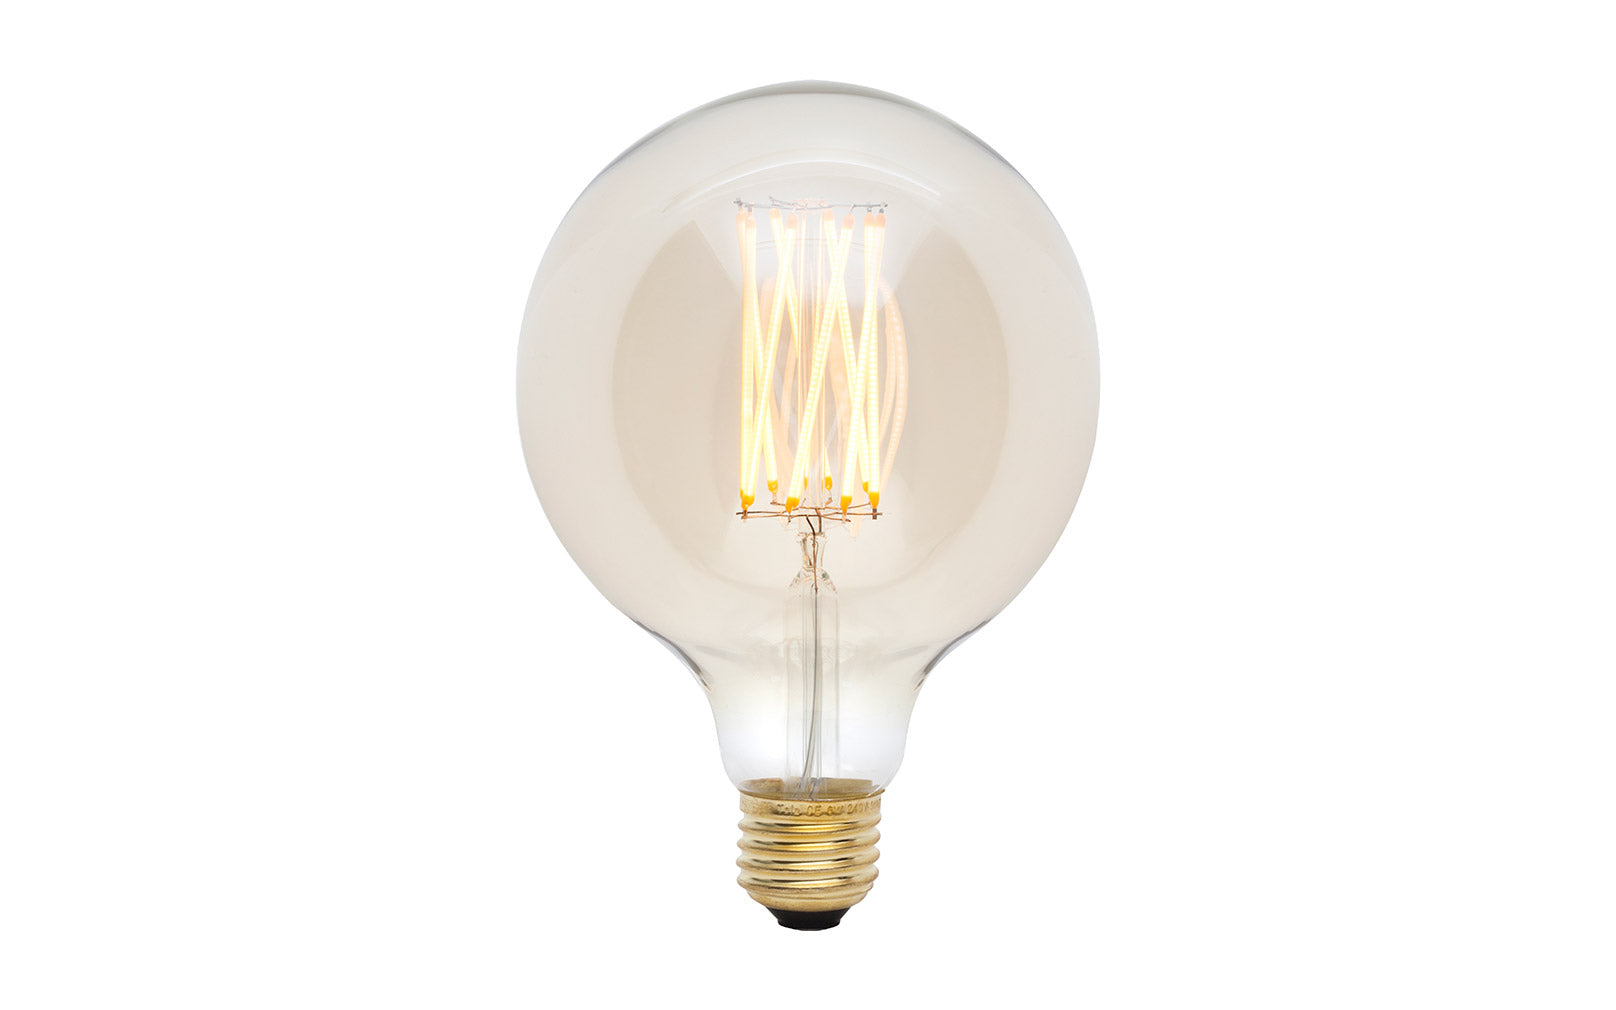 Tala Gaia 6W LED Filament Light Bulb